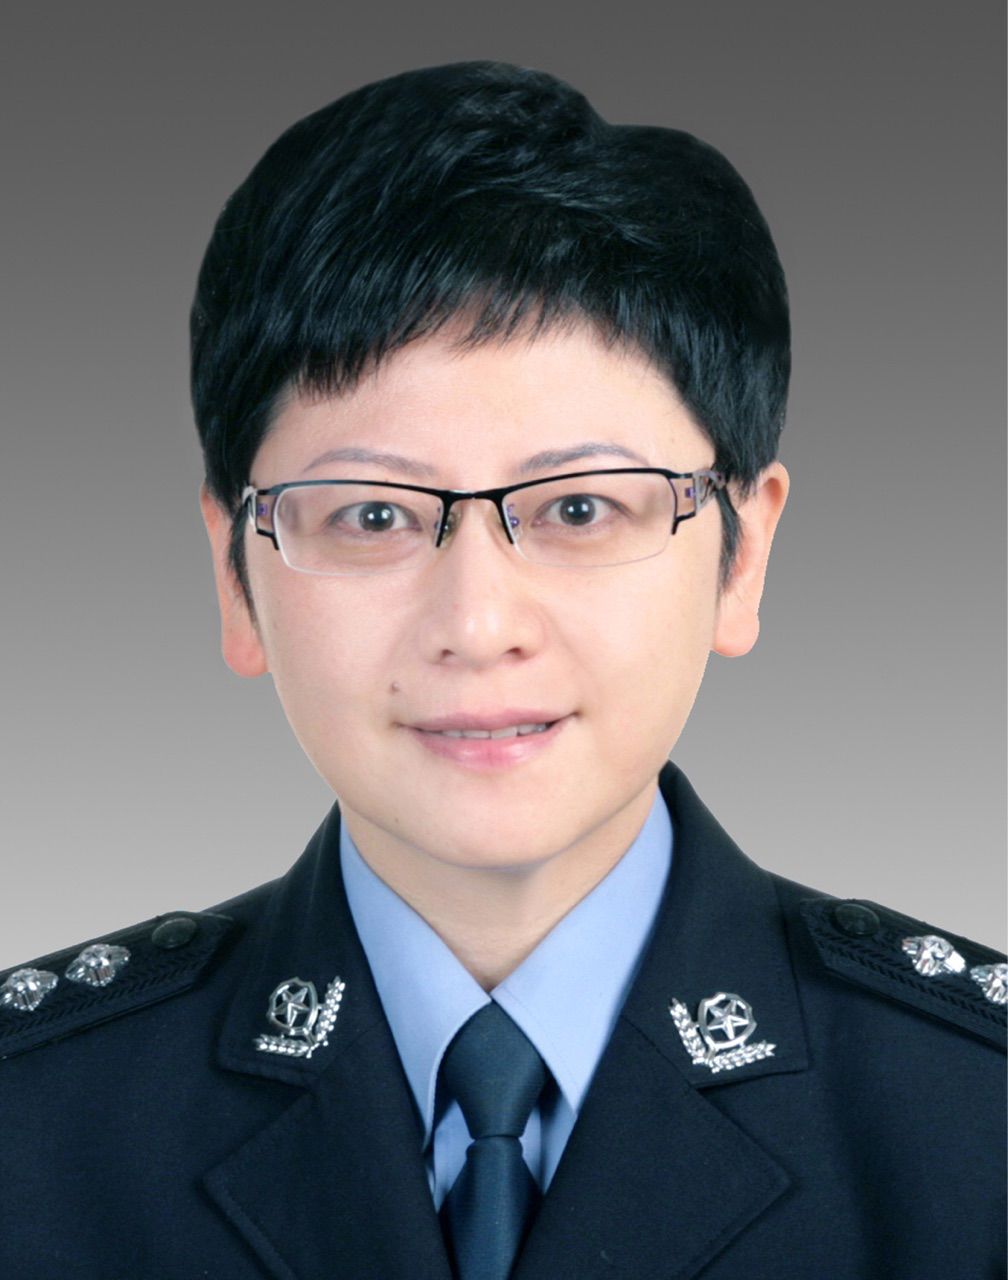 现任绍兴市公安局监管支队支队长,拟任绍兴市级部门副局级领导职务.